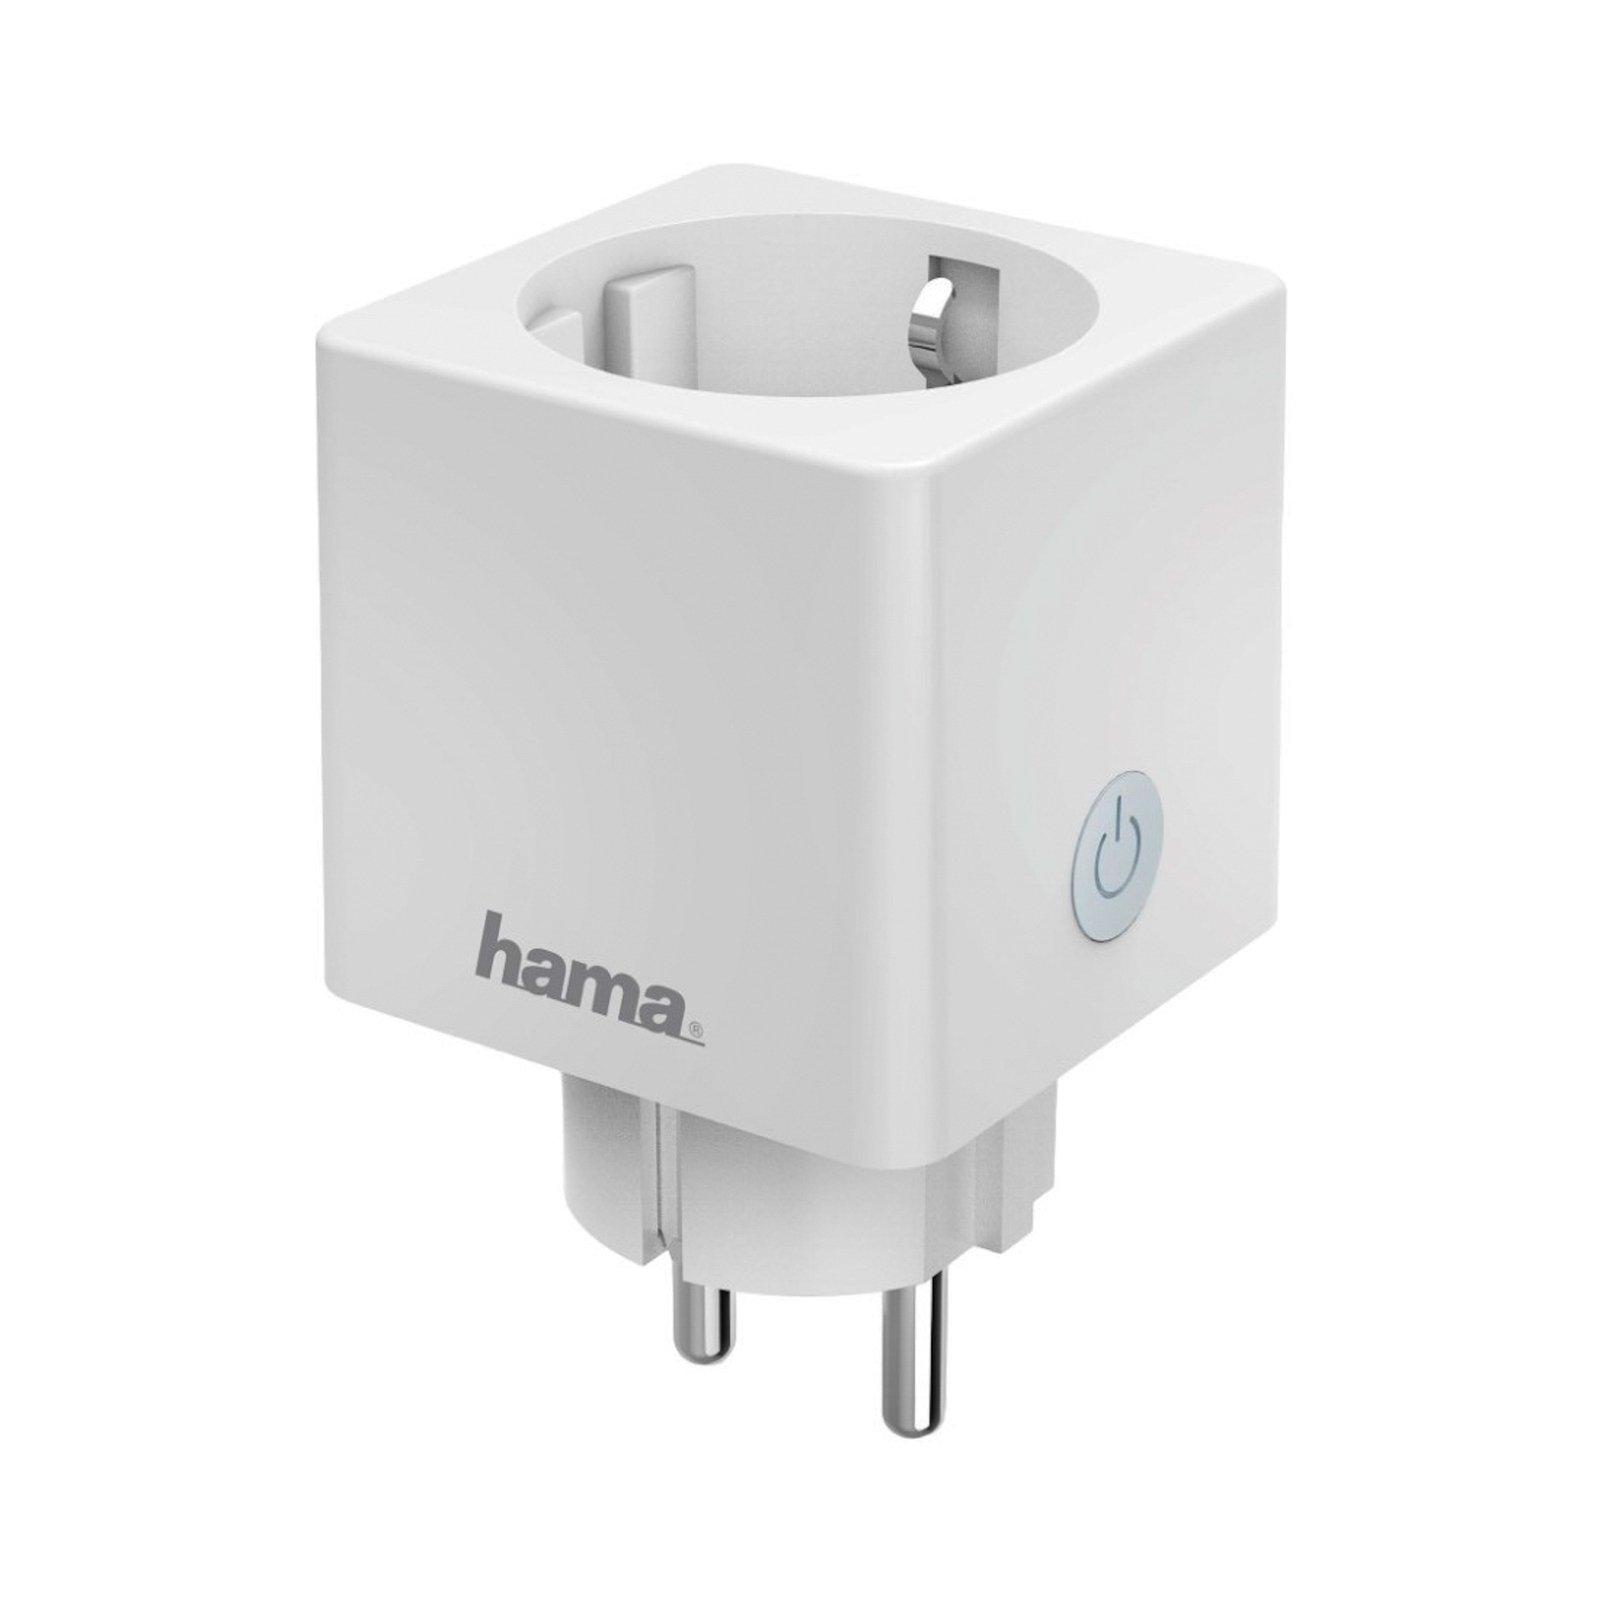 Hama Mini tomada WLAN Contador de eletricidade Controlo por aplicação